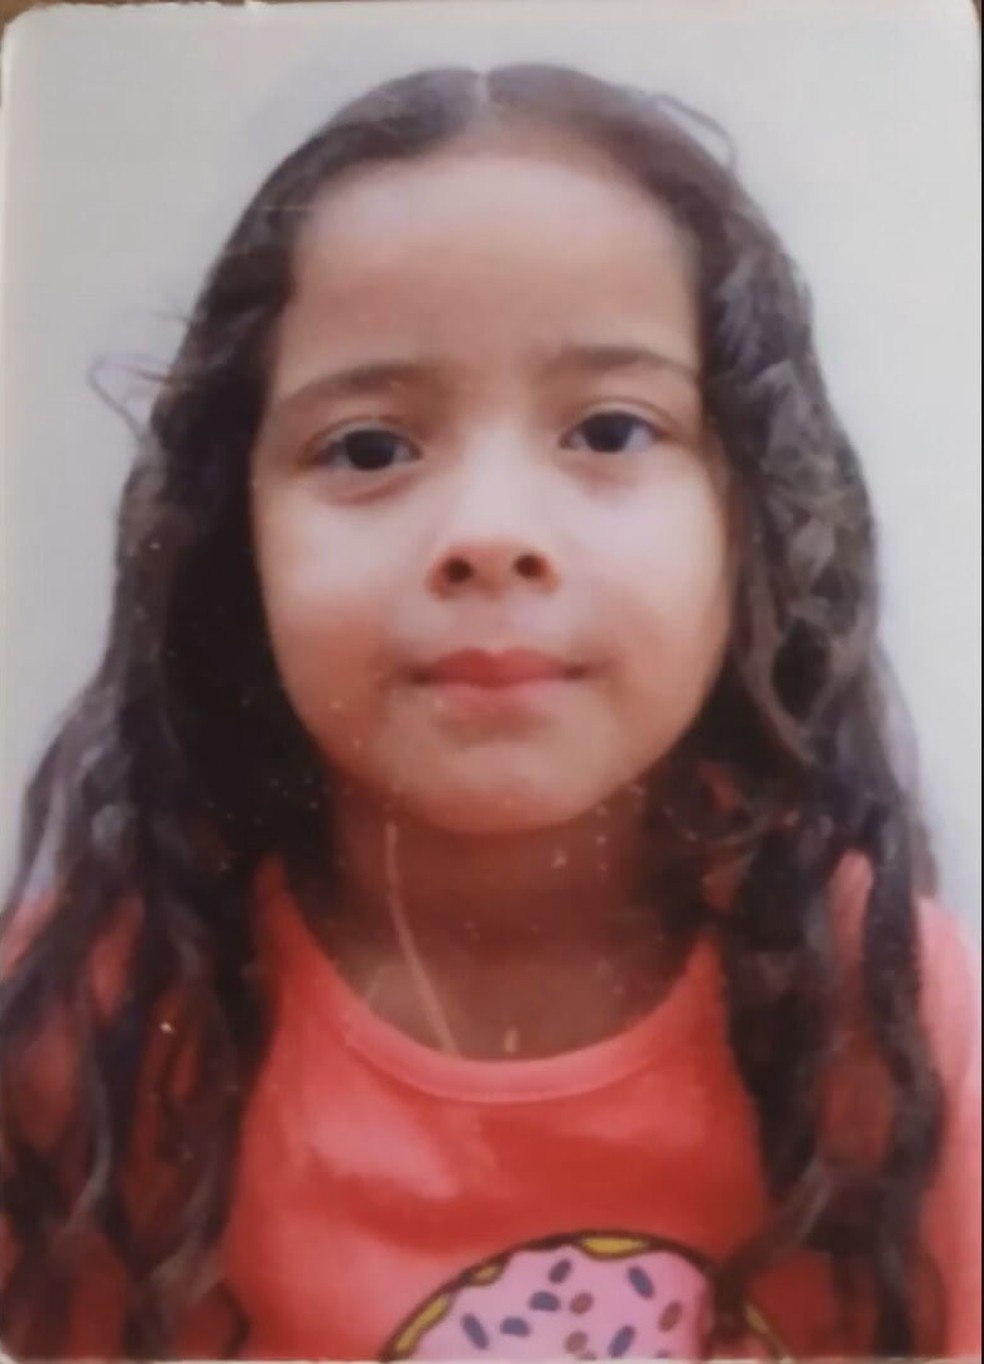 Vitória de Oliveira, 4 anos, atropelada na DF-130, no Núcleo Rural Rajadinha — Foto: Arquivo pessoal